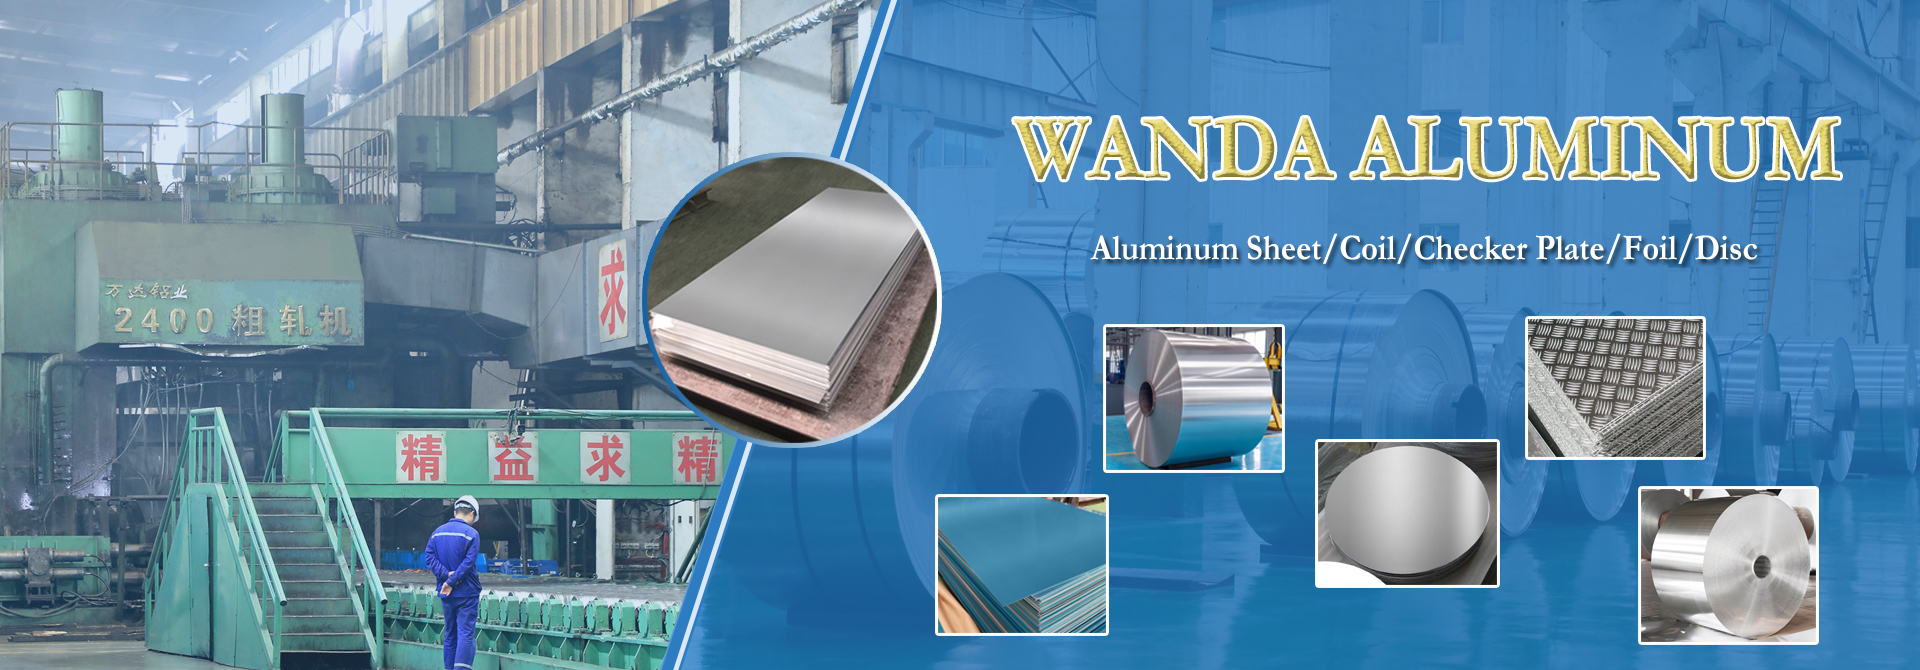 Wanda Aluminium Products